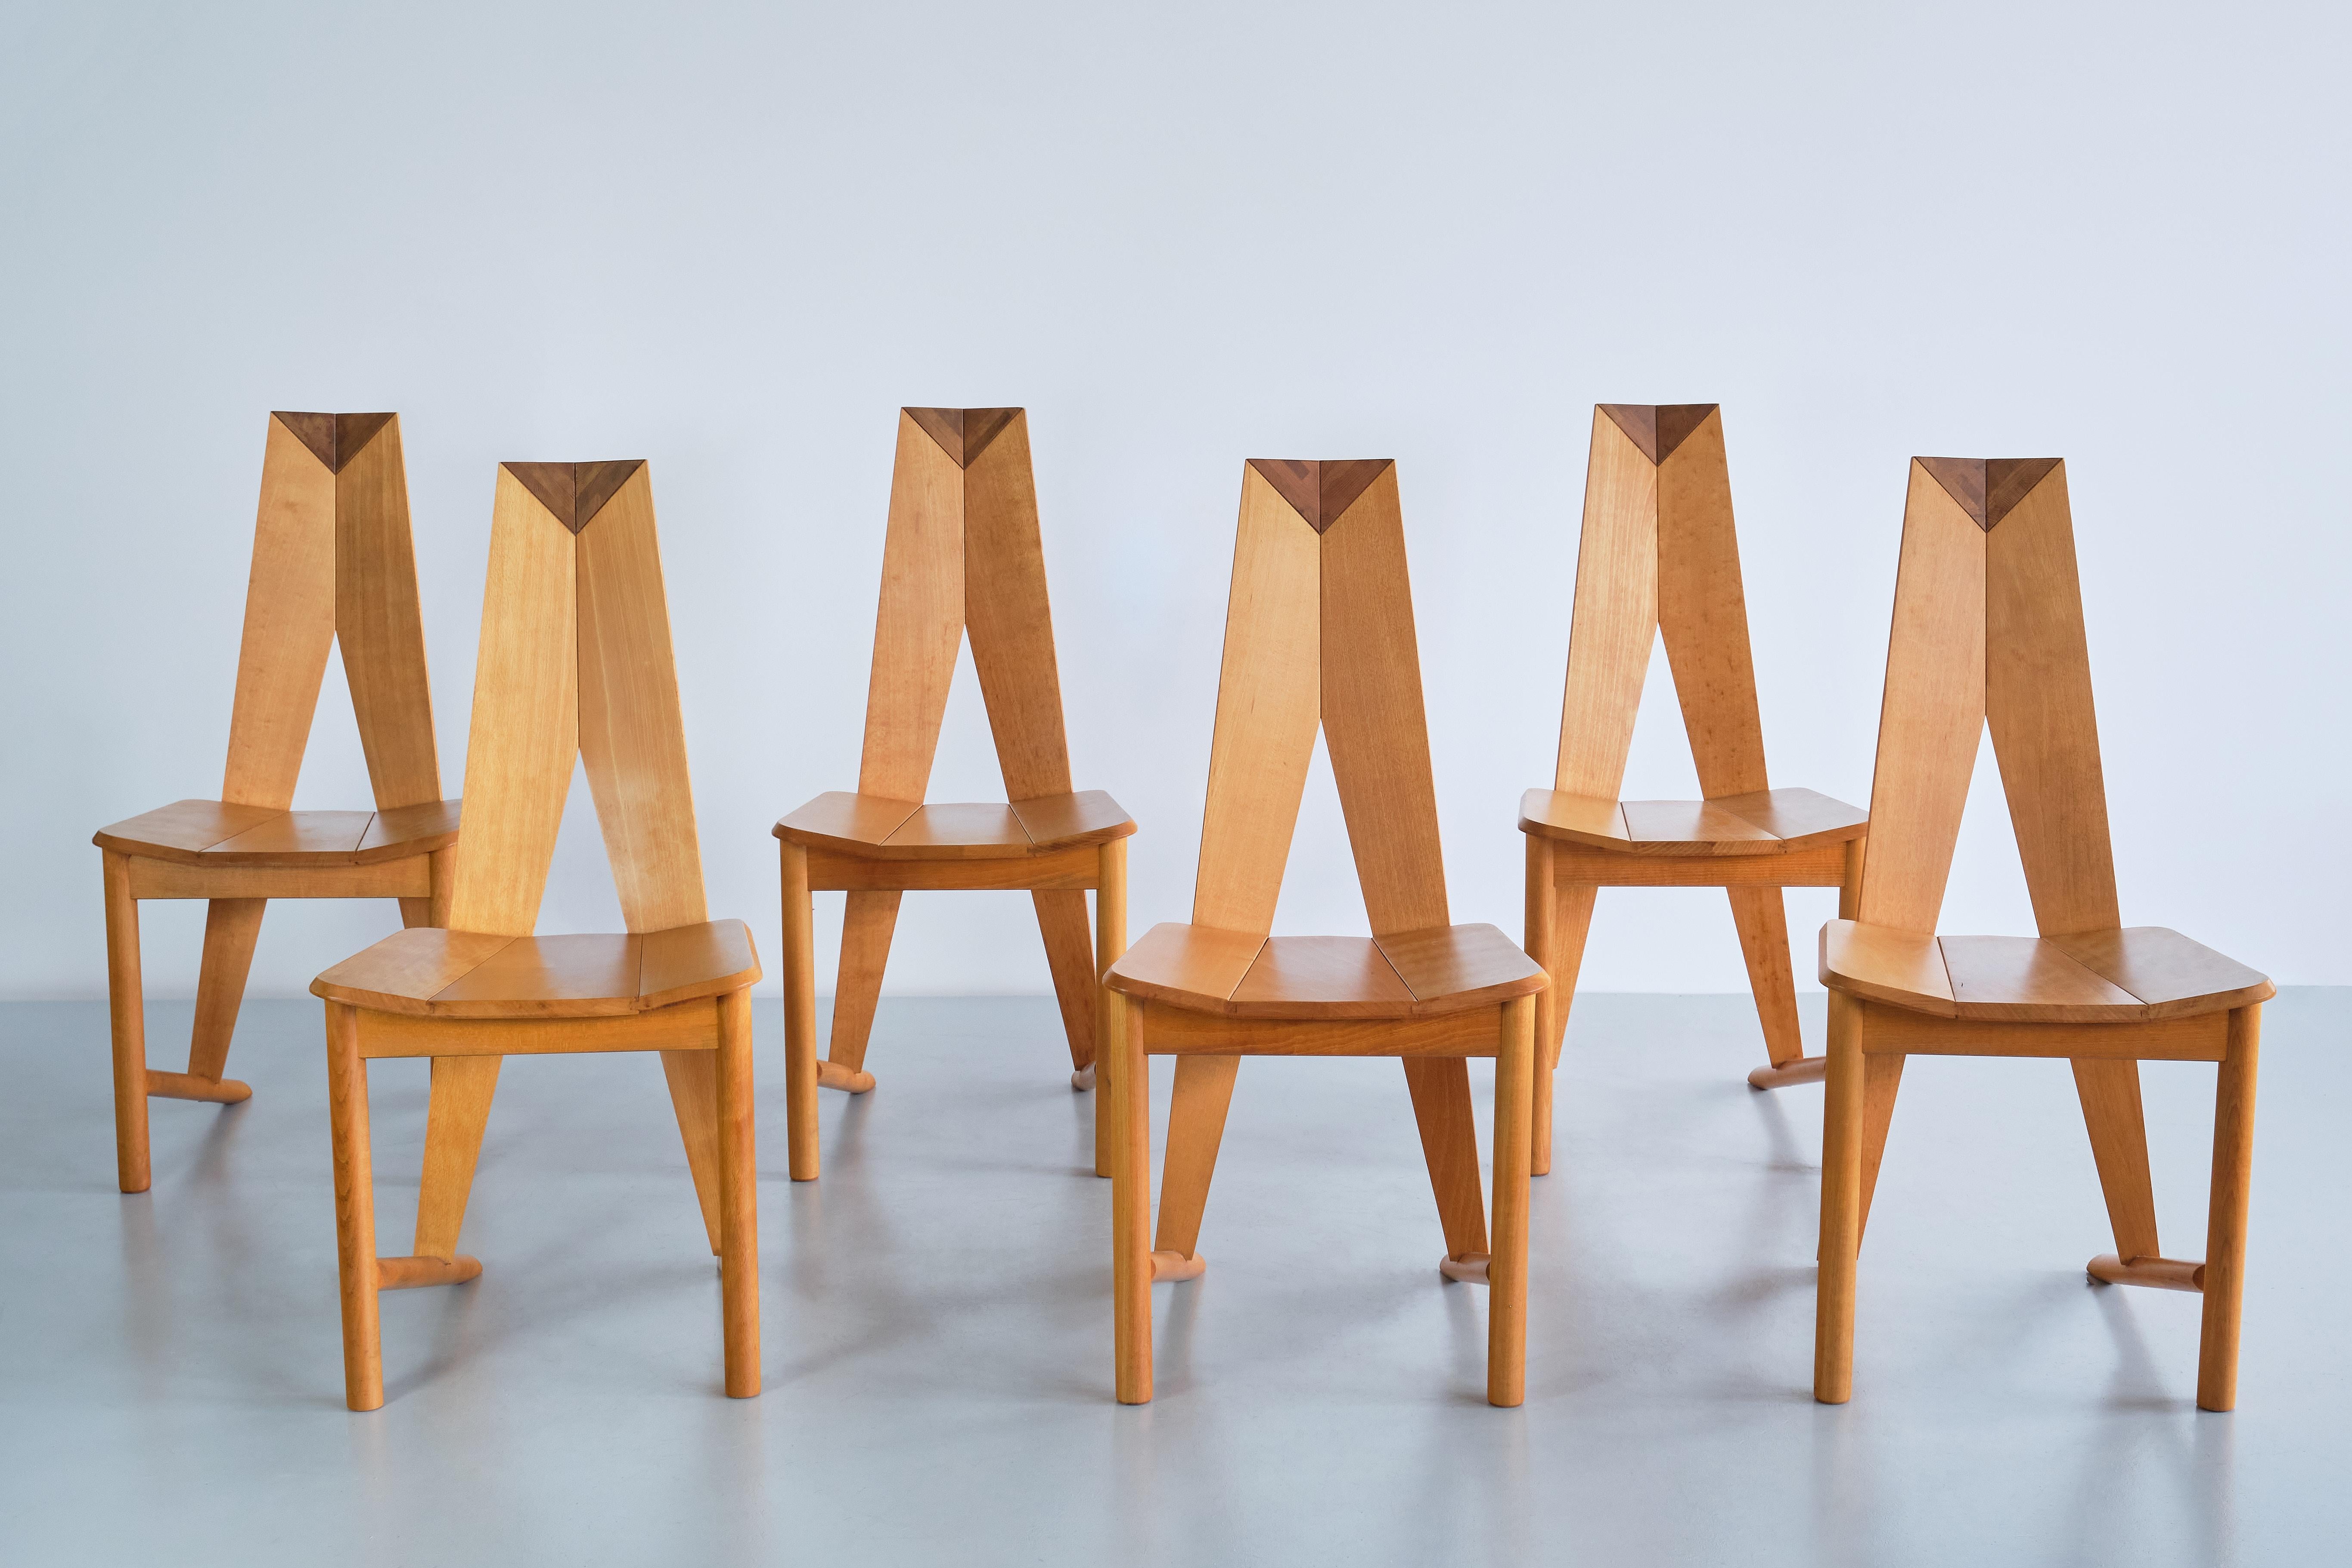 Ce rare ensemble de six chaises de salle à manger a été conçu par les designers danois Søren Nissen et Ebbe Gehl. Les chaises ont été produites par le fabricant français Ebénisterie Seltz pendant une courte période dans les années 1980. 

Ce